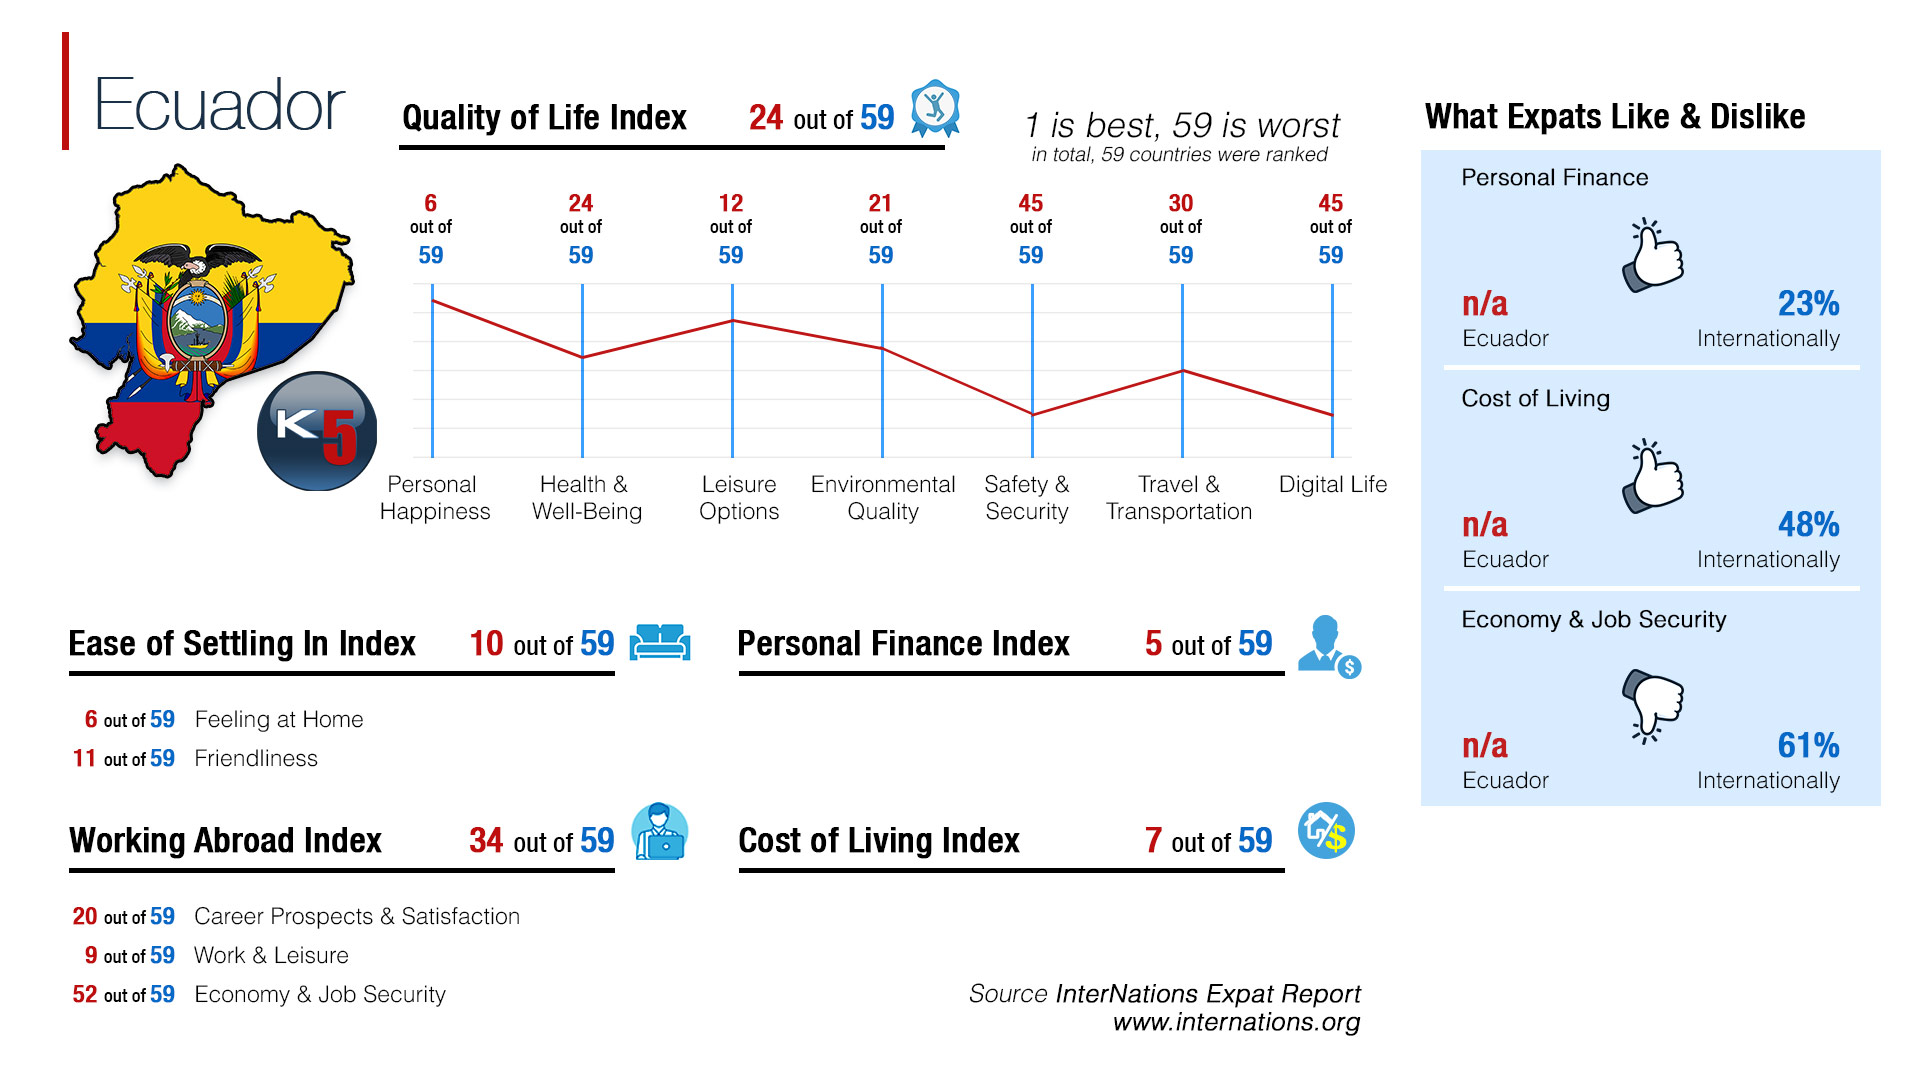 Quality of Life Index in Ecuador